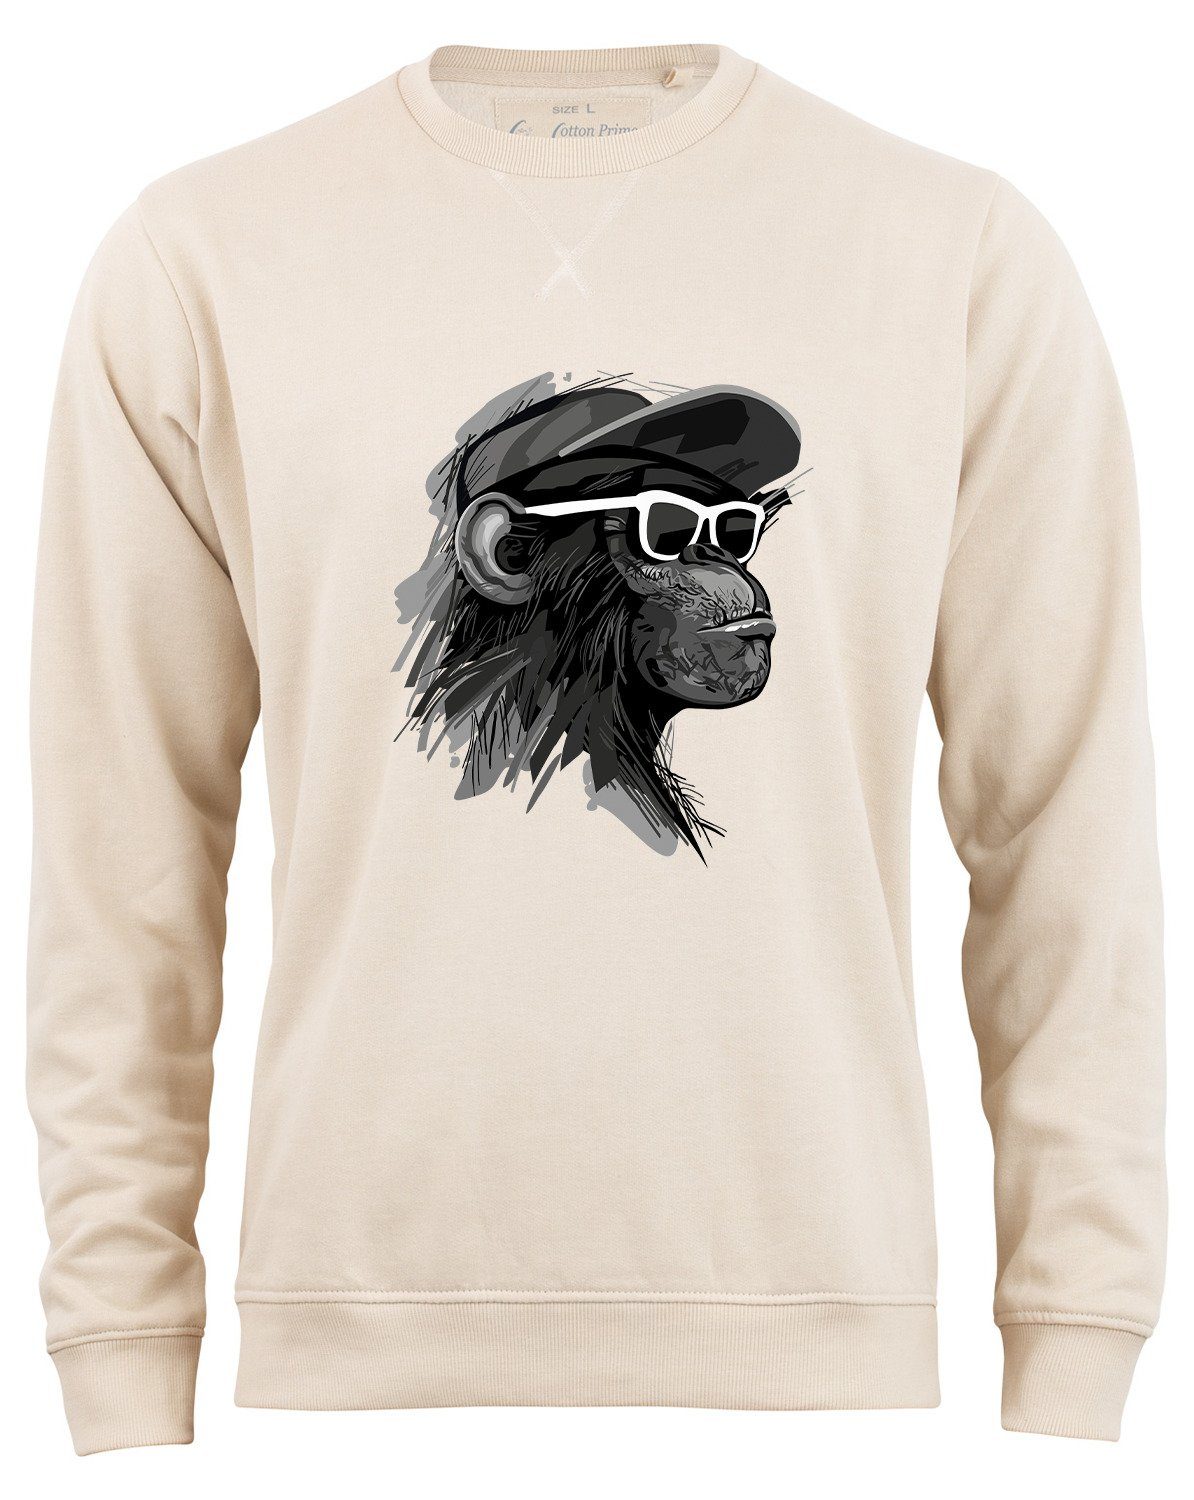 Cotton Prime® Sweatshirt Cool Monkey mit Brille mit weichem Innenfleece Beige